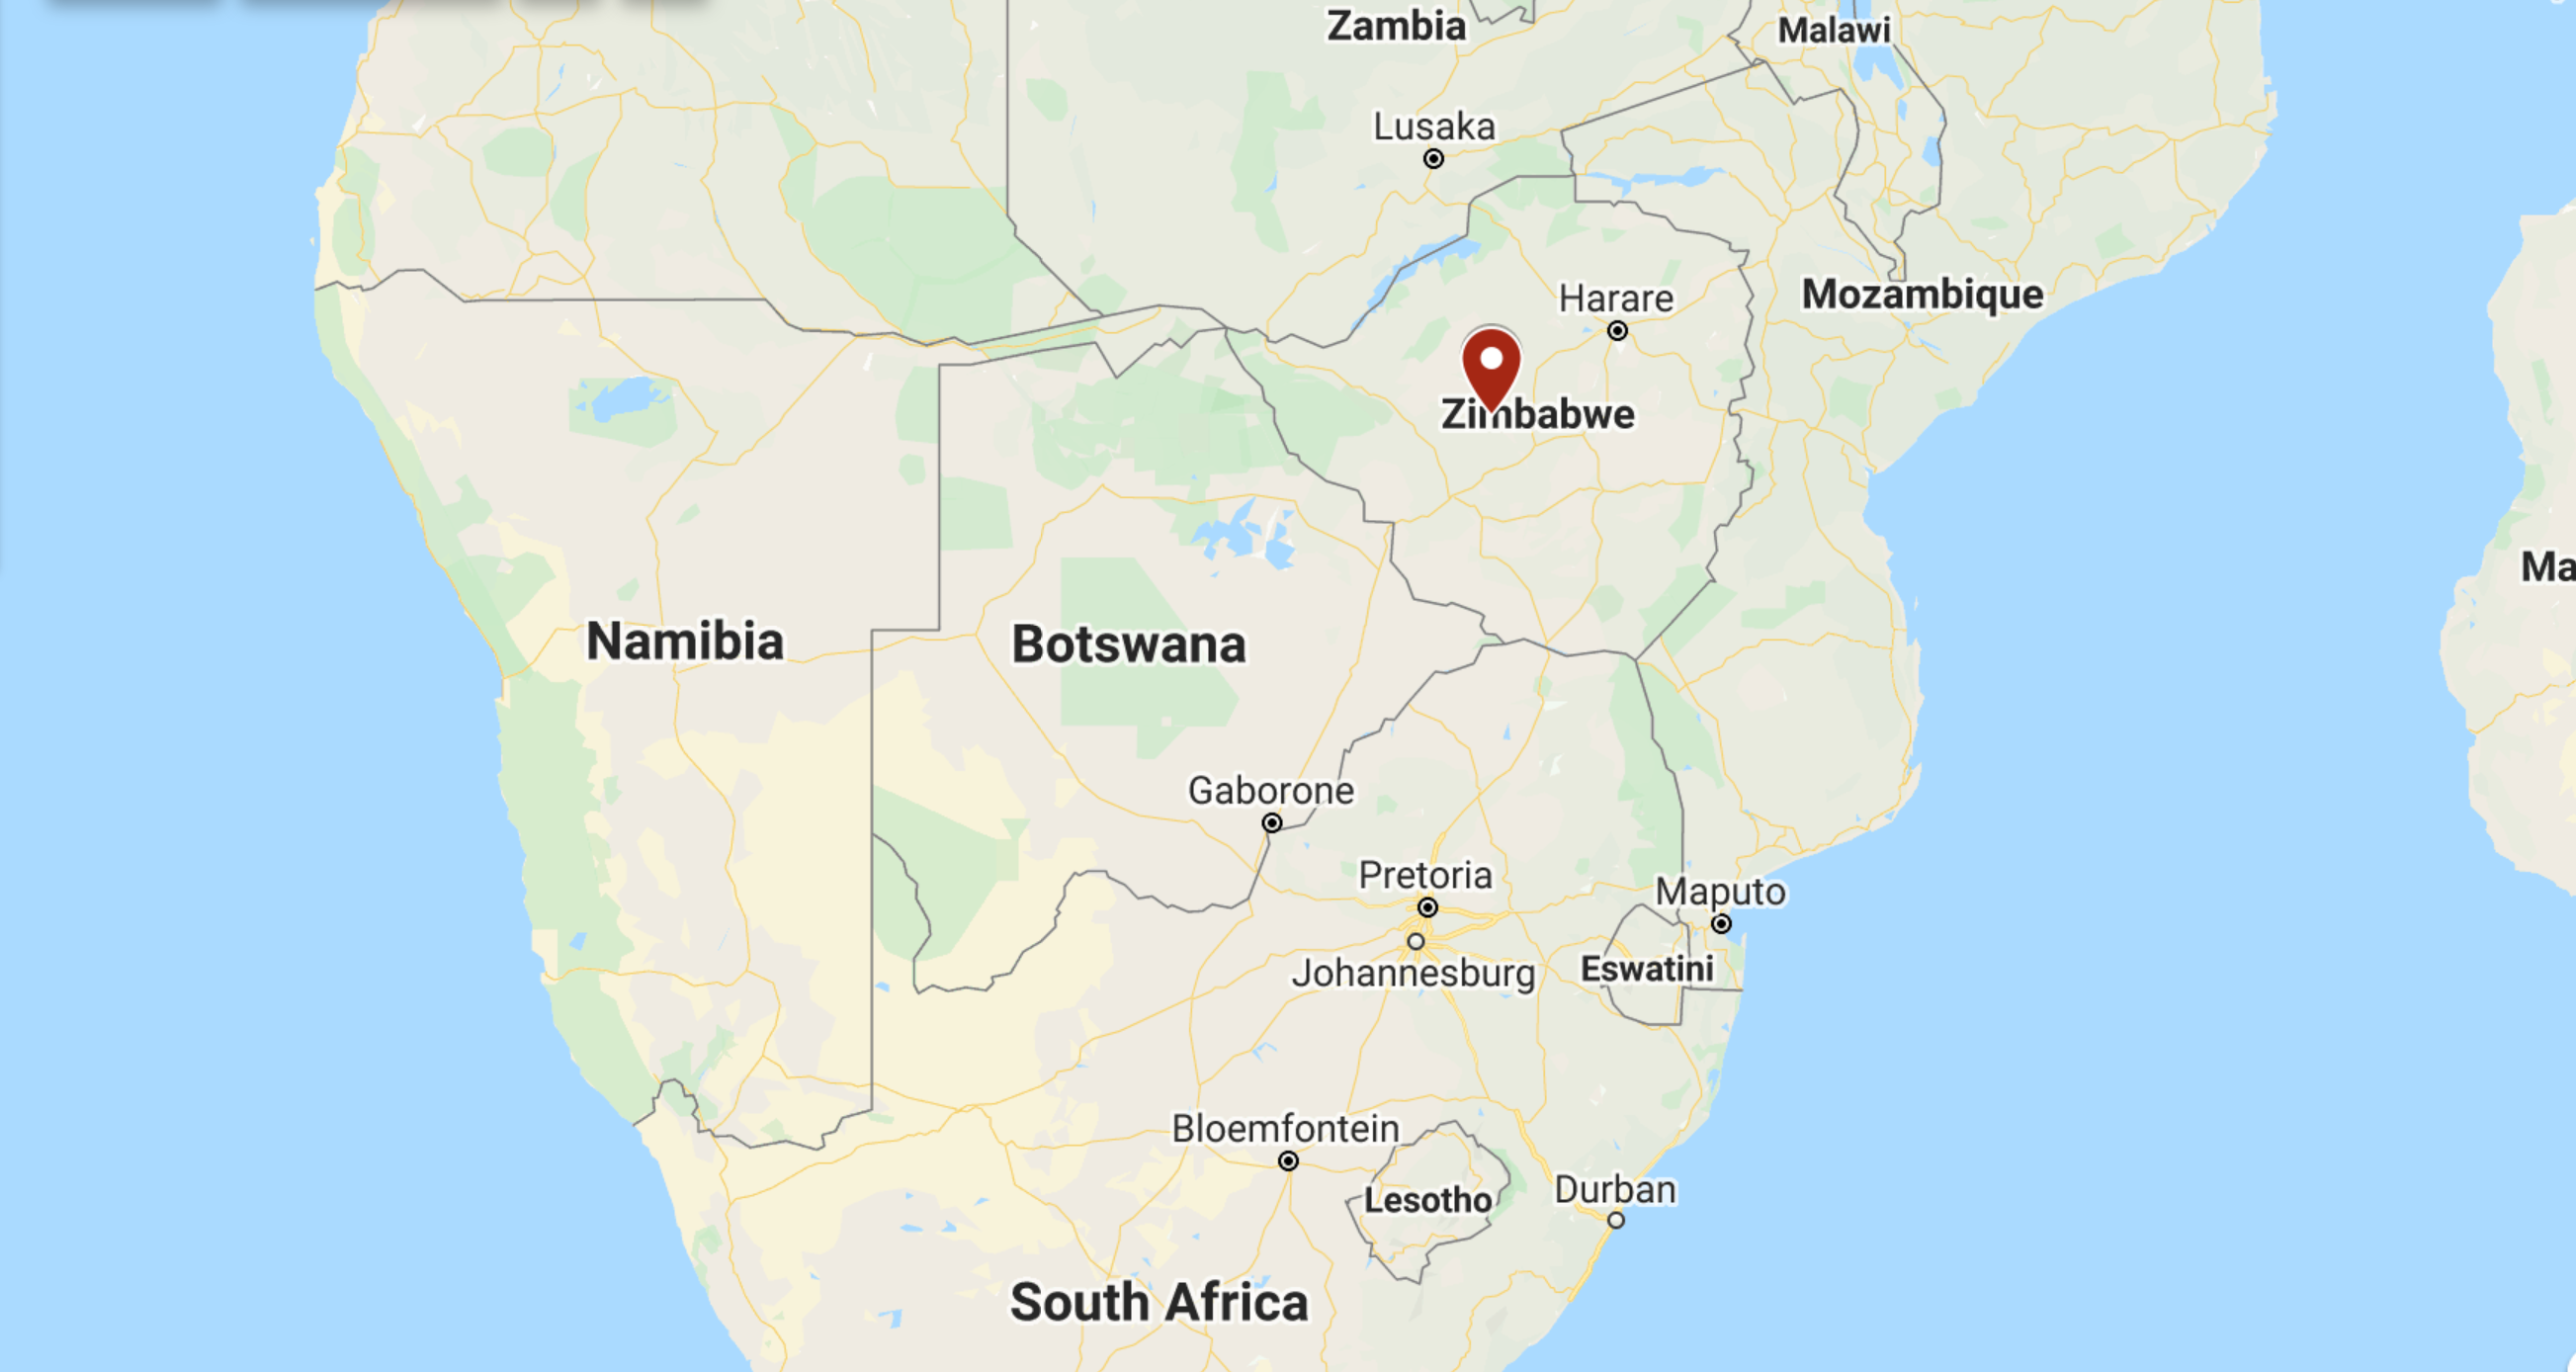 Zimbabwe, Africa. Image: Google Maps